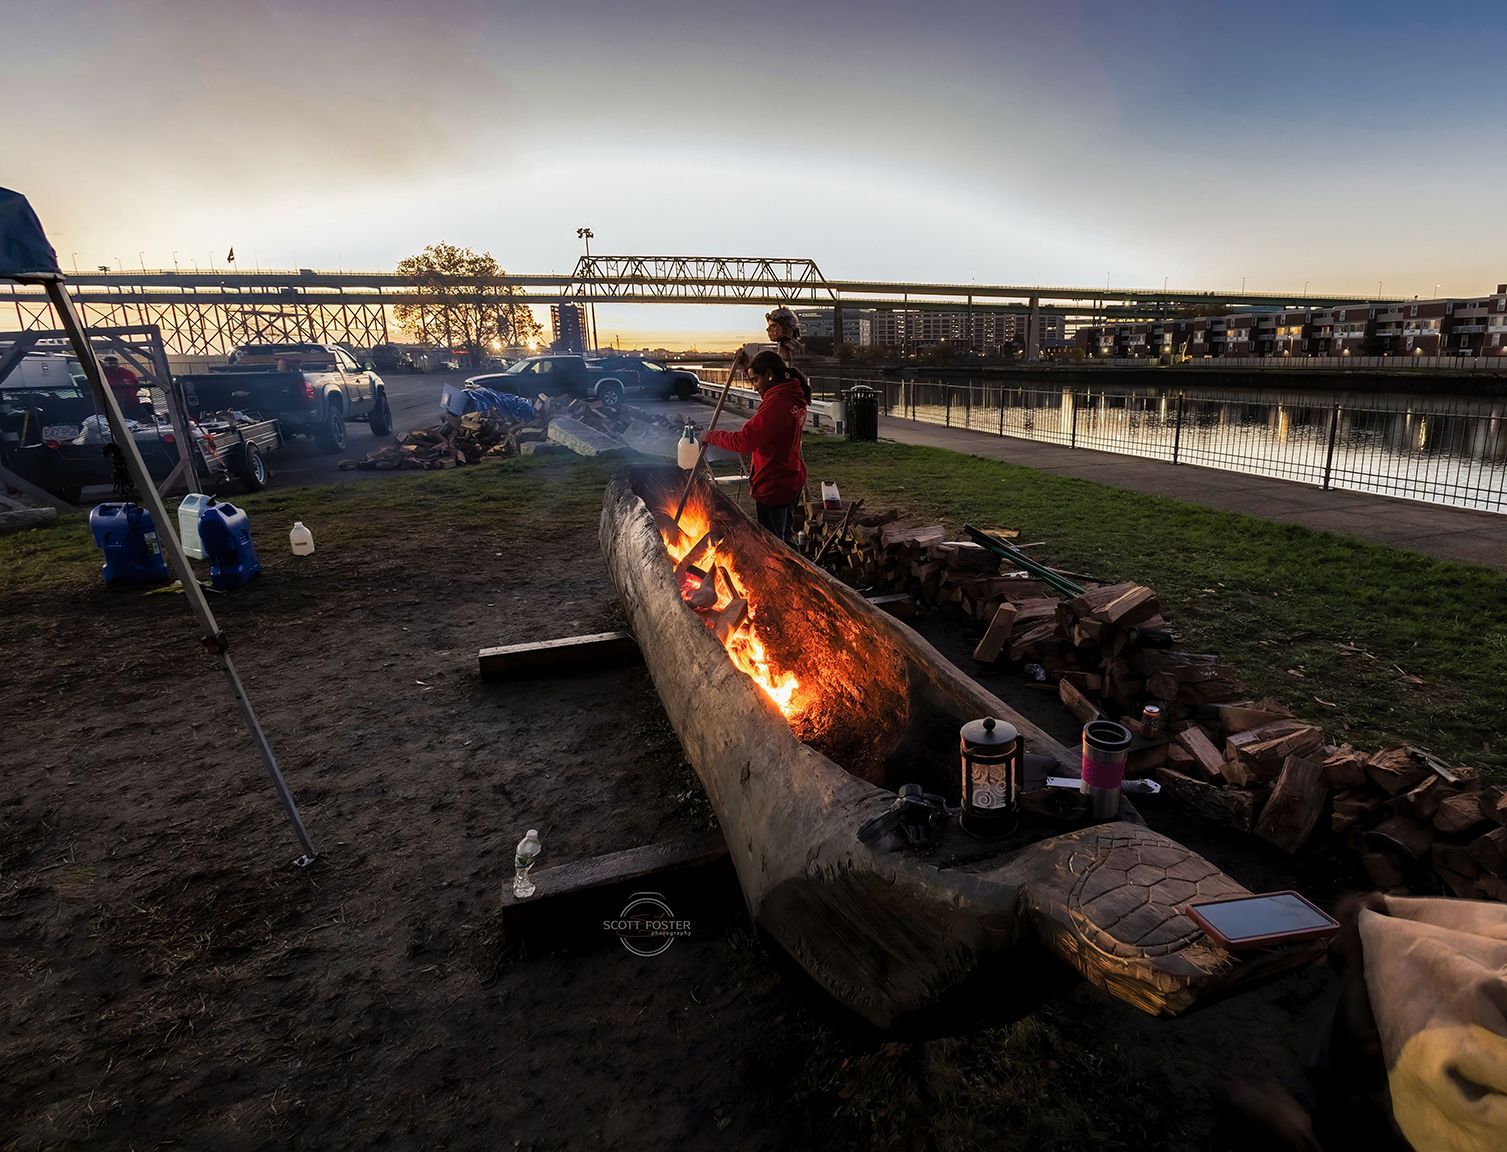 Mishoon canoe burning at sunset in Wesport, MA